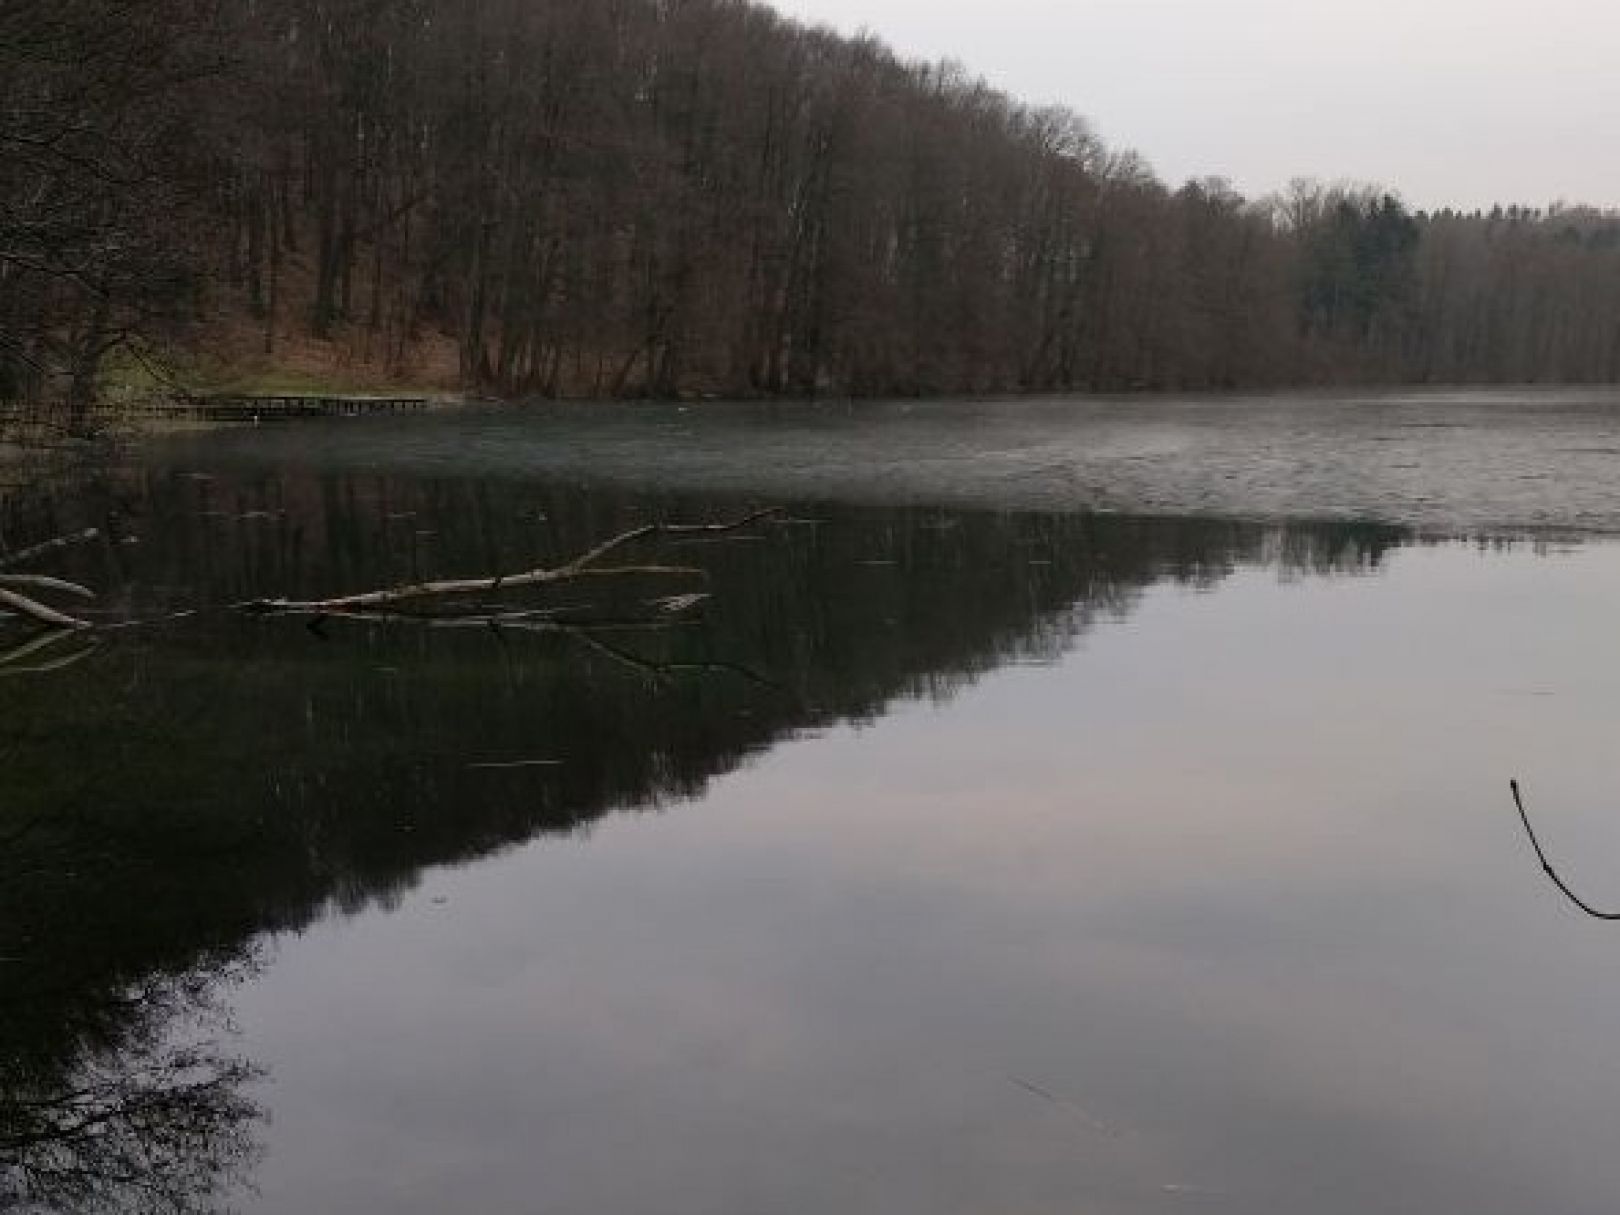 Jezioro Trześniowskie (Ciecz) angeln